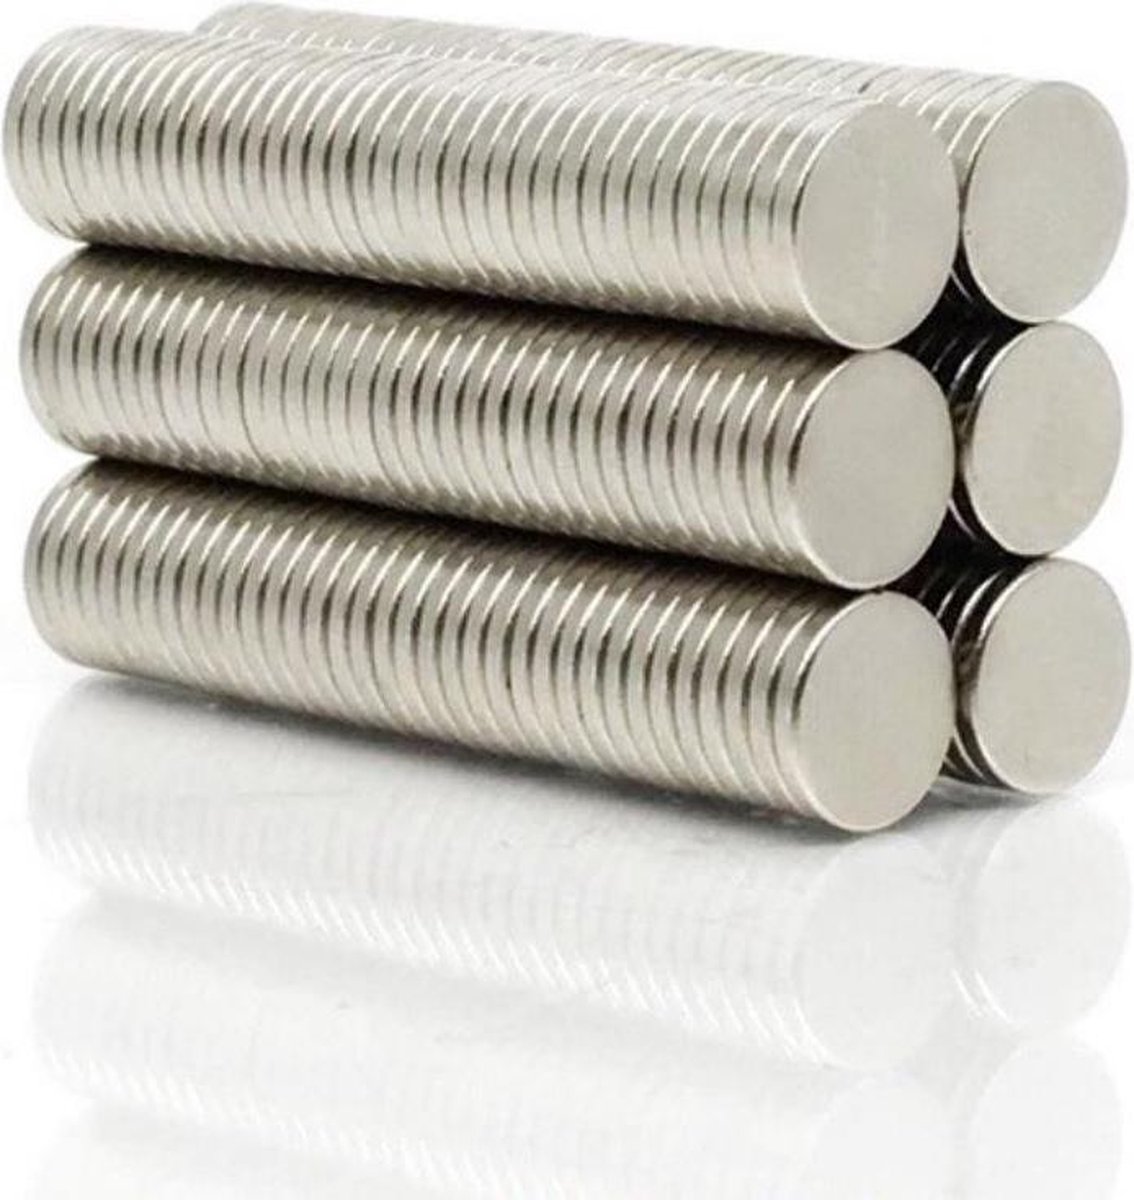 Ronde platte neodymium magneetjes 50 stuks - of veelvouden hiervan - 10 x 1,5 mm - zeer sterk - neodymium magneet - koelkast - whiteboard - Merkloos